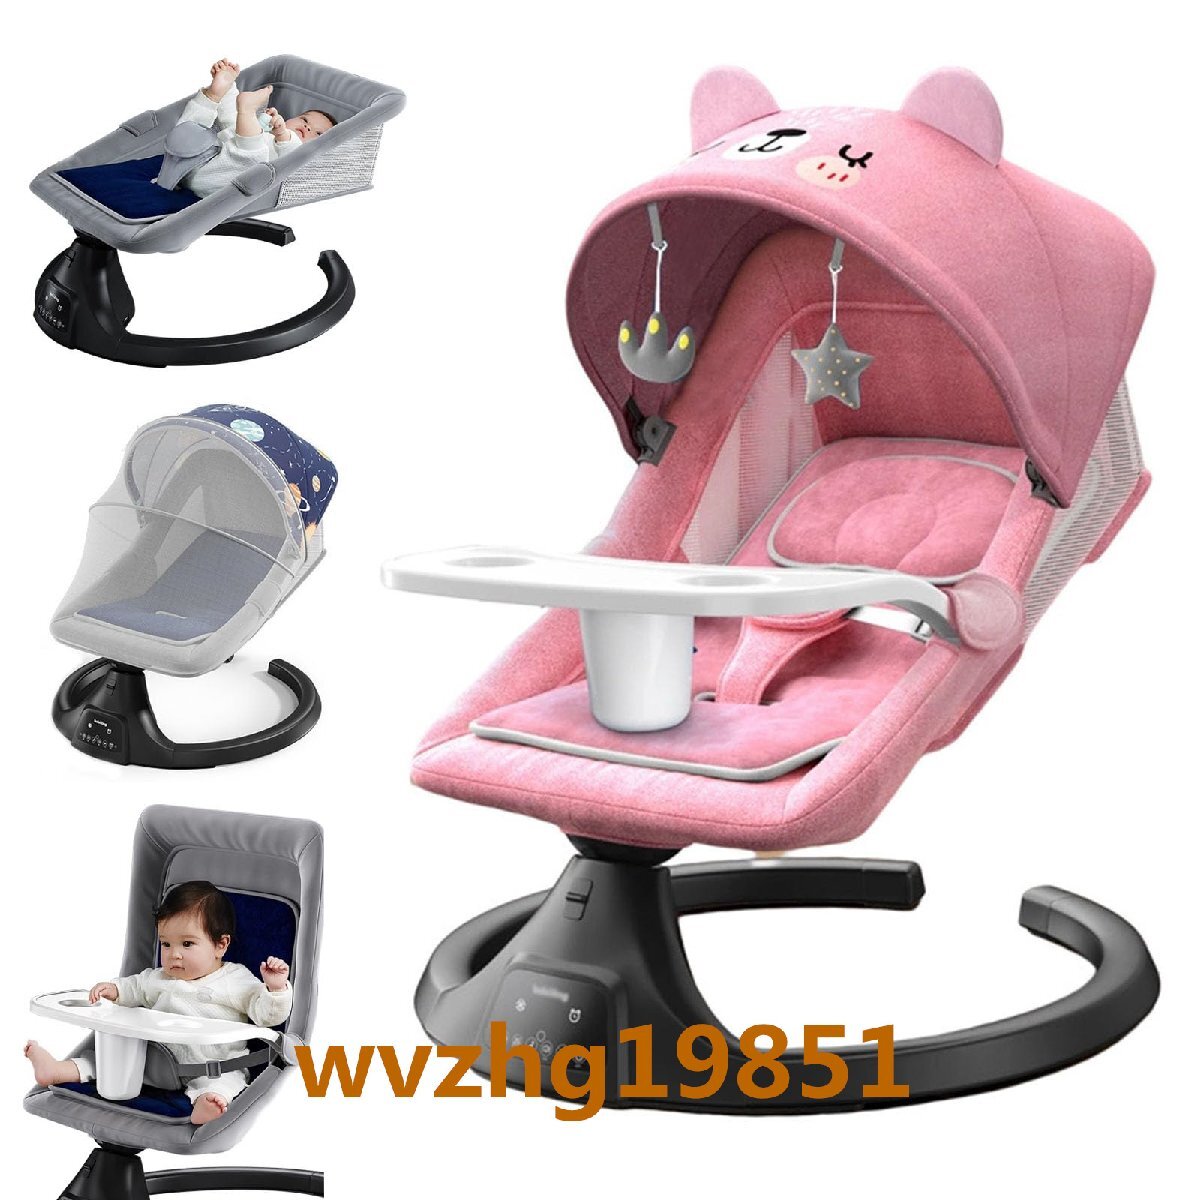 电动摇摇椅新生儿俯仰婴儿摇椅可调节靠背6个月至3岁多功能椅带板+无蚊帐A, 手工作品, 家具, 椅子, 椅子, 椅子